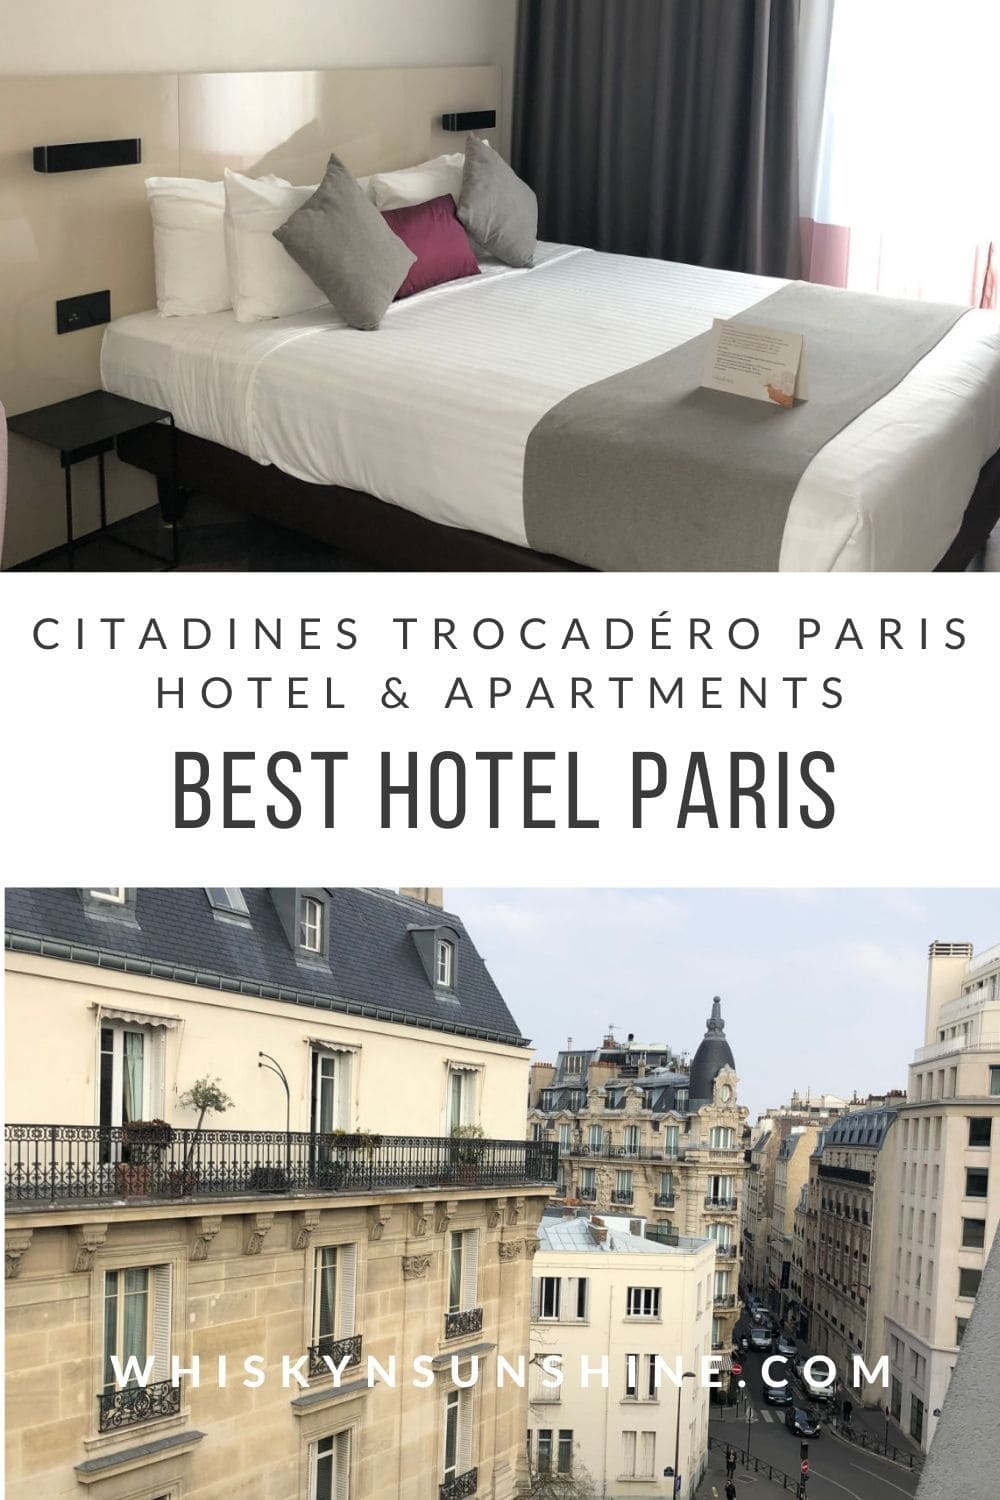 Citadines Trocadéro Paris hotel and apartments